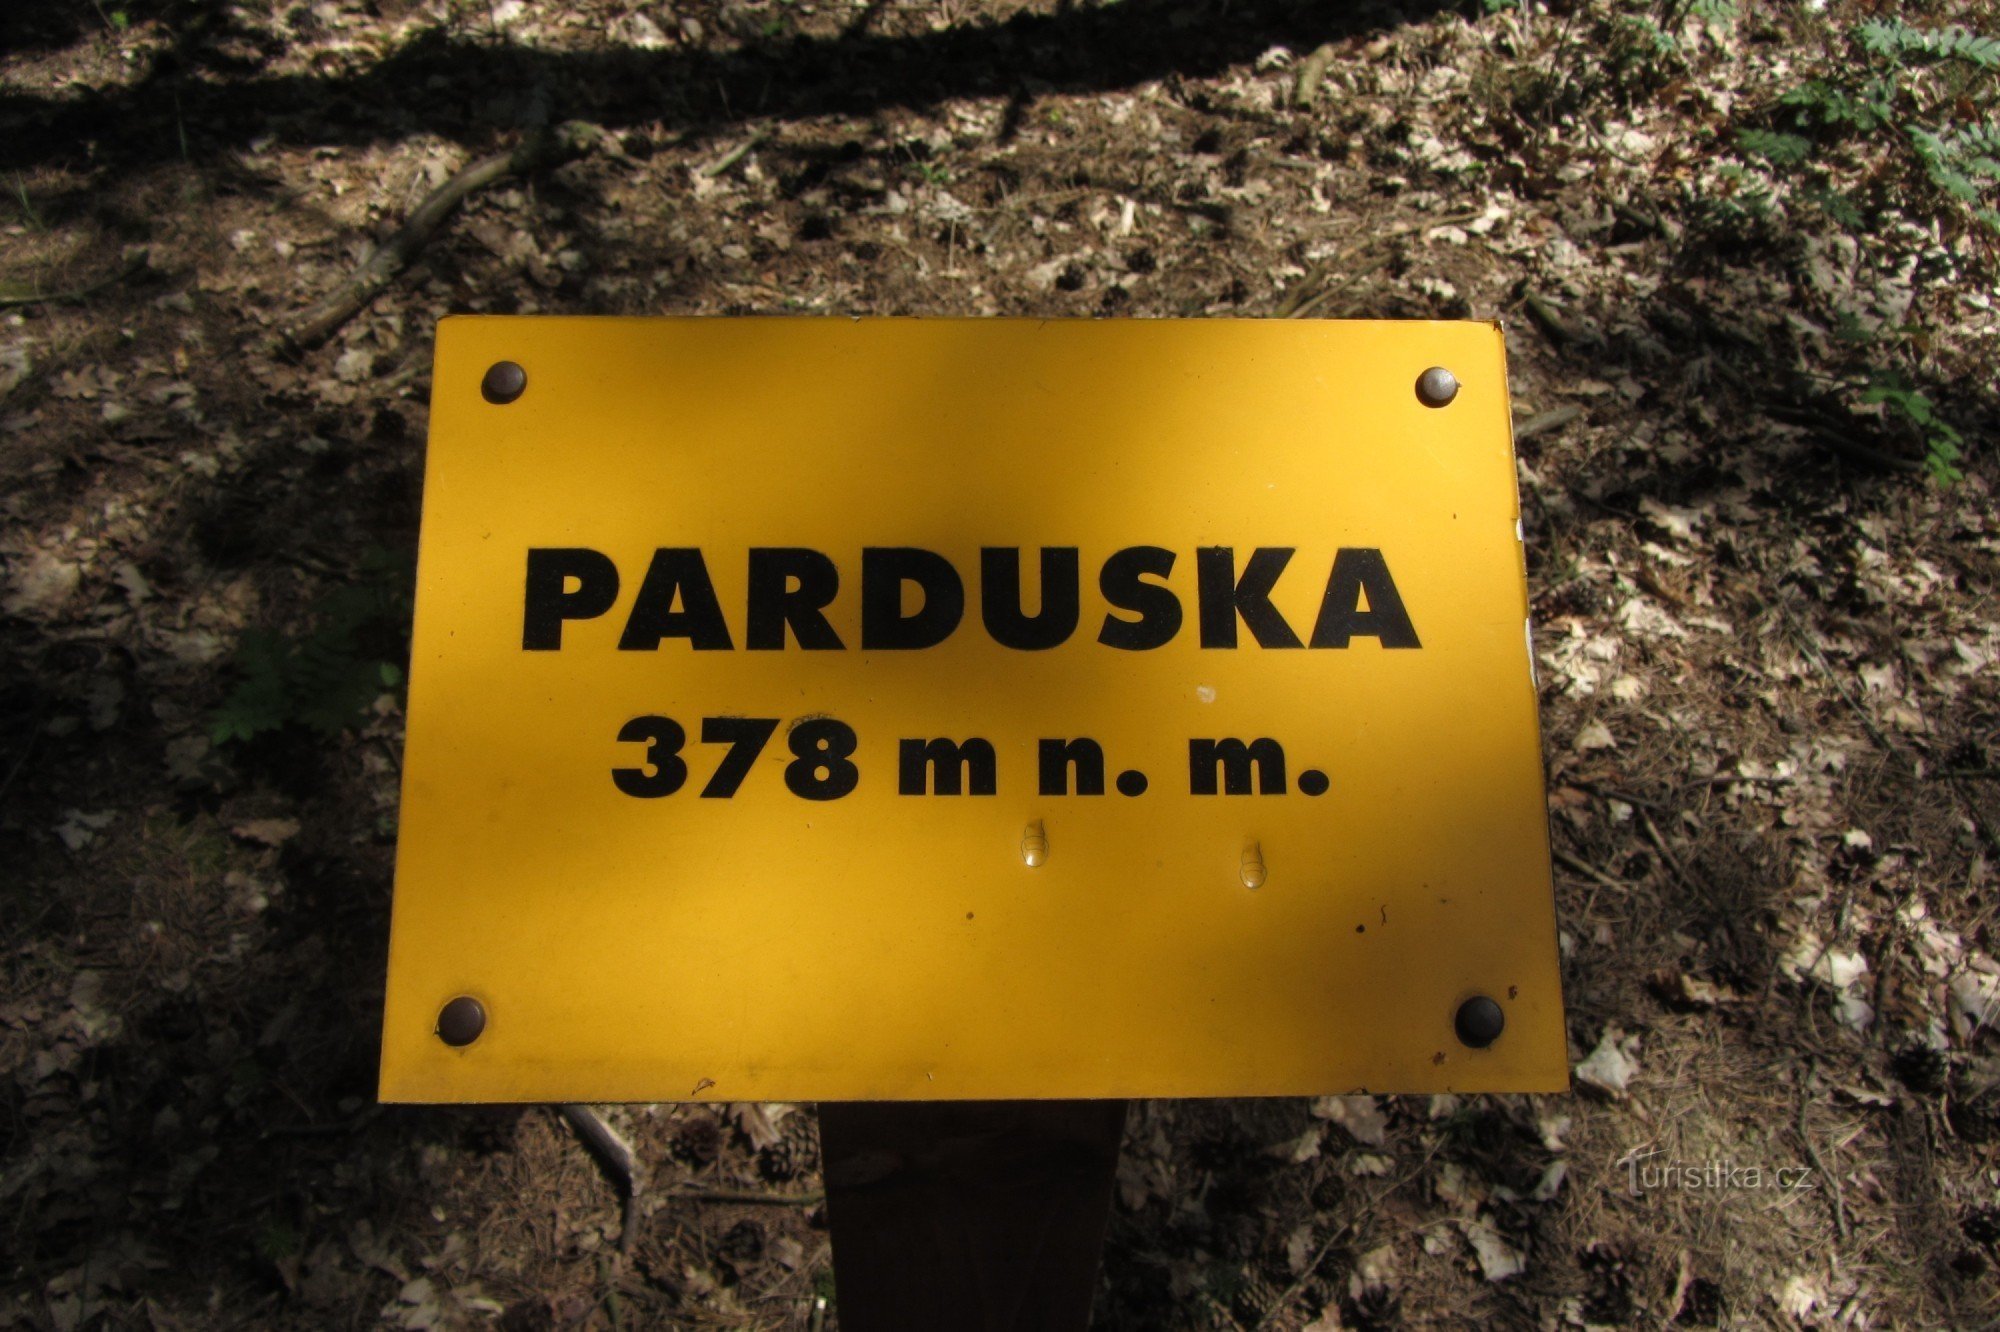 Parduska - peak